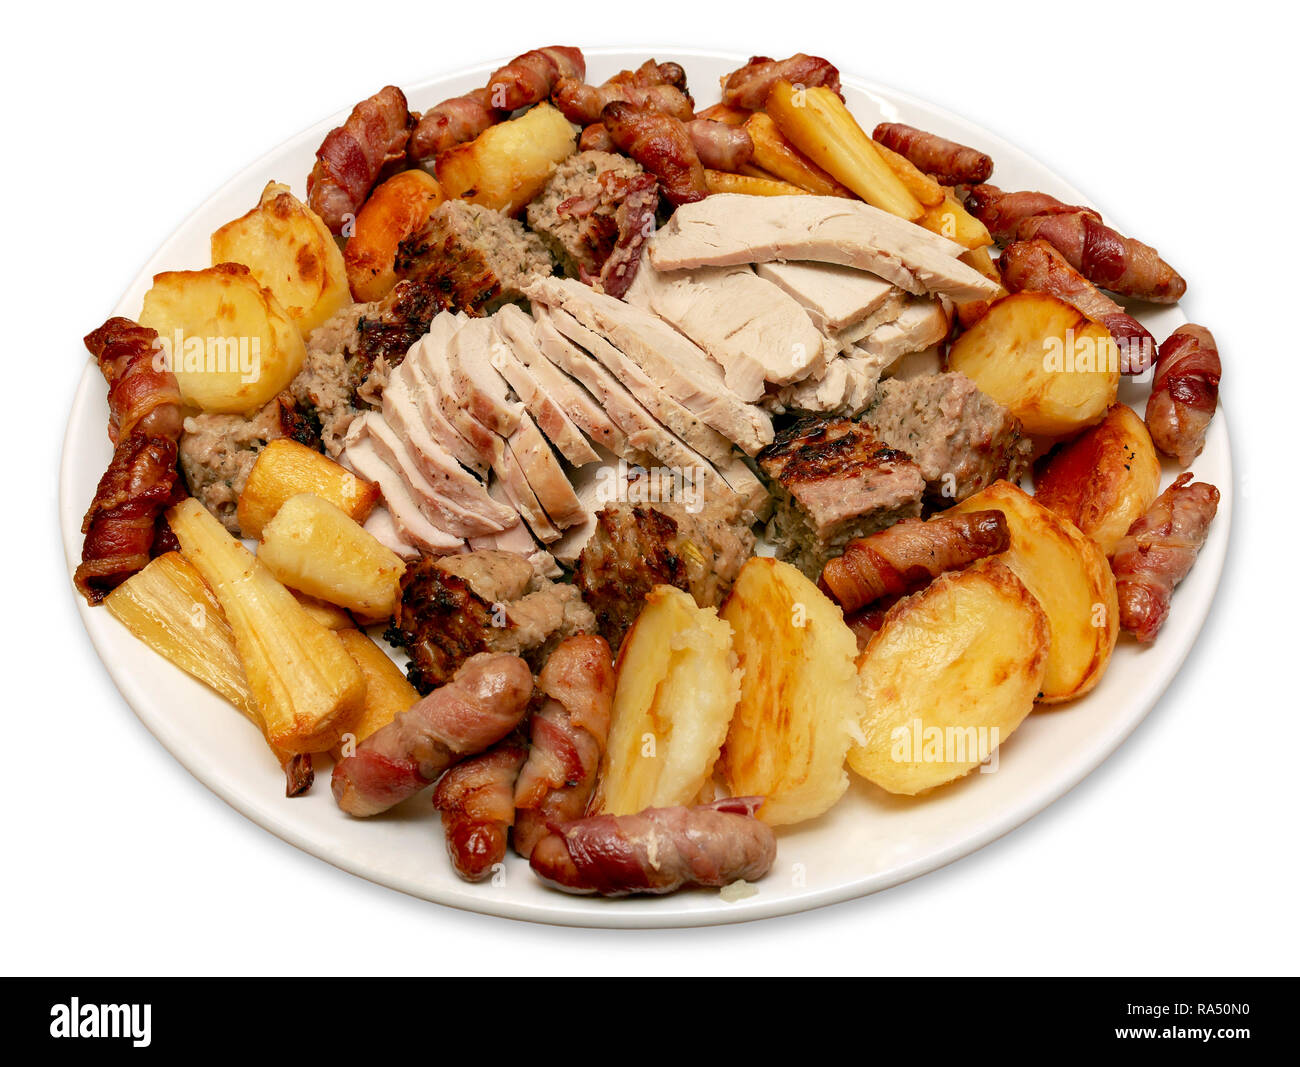 Rôti de dindon le dîner plat de service avec des pommes de terre, le panais, les porcs dans des couvertures et de la farce sur un cas isolé sur fond blanc Banque D'Images